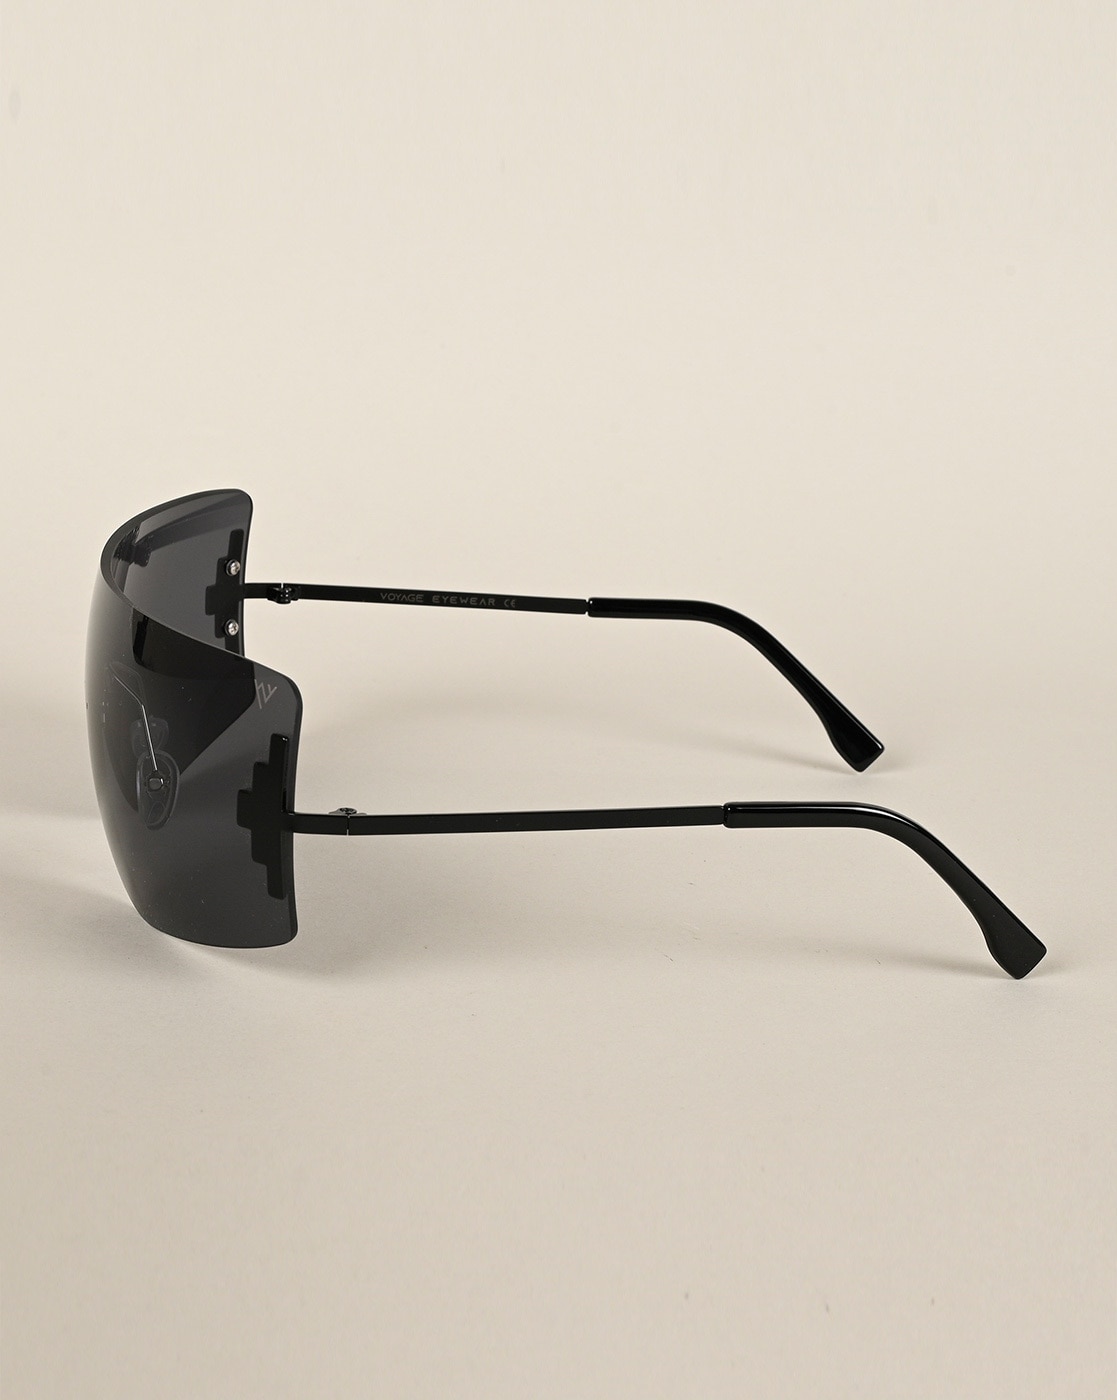 Buy Voyage Black Rectangle Sunglasses for Men & Women - 2318MG4498 online